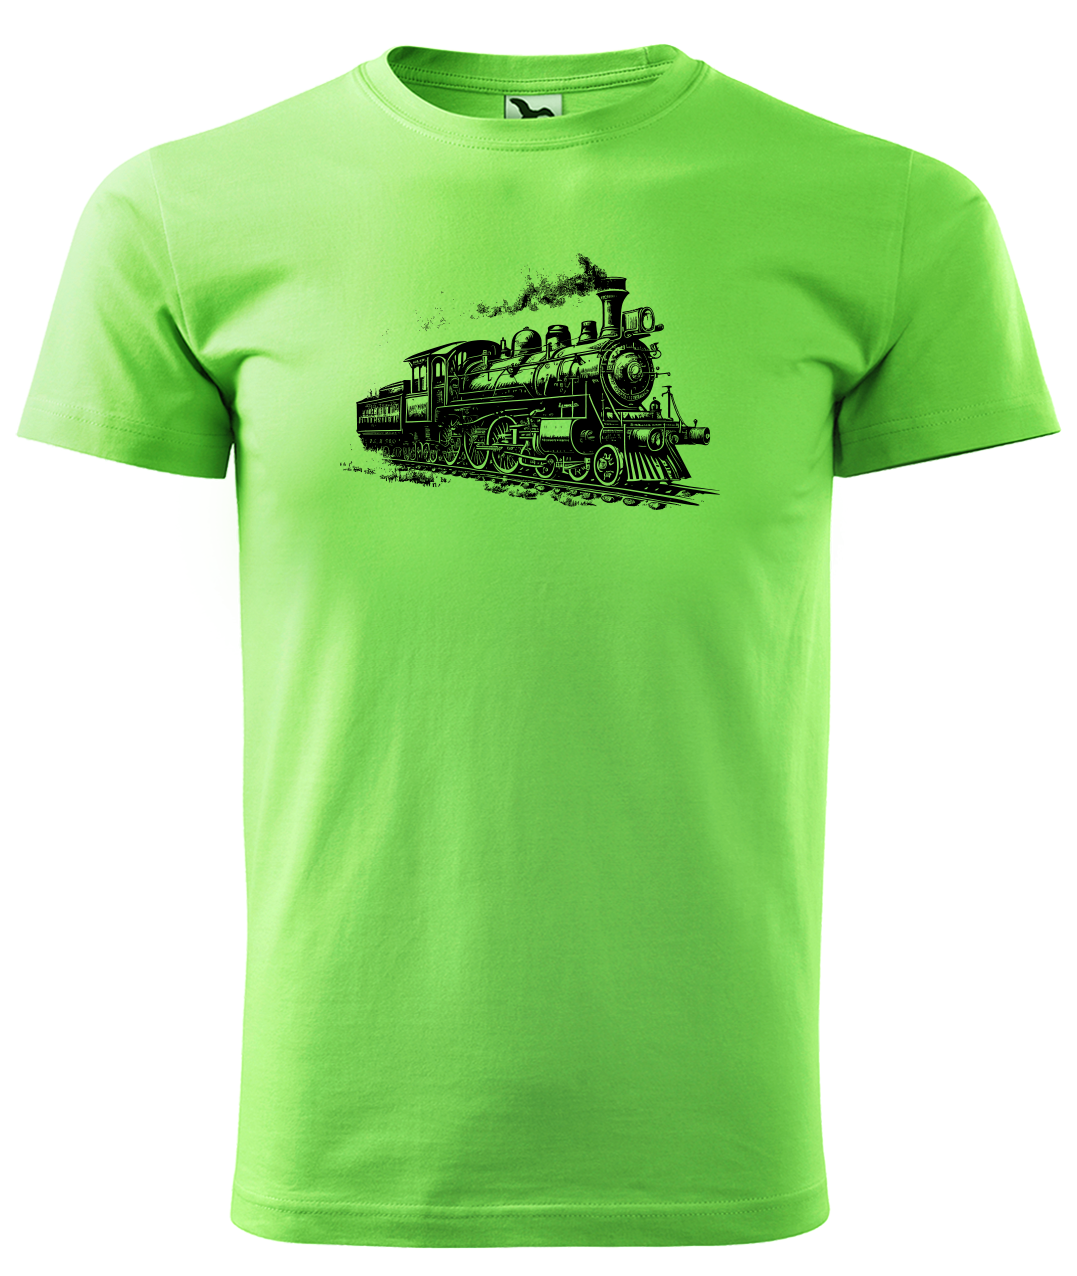 Dětské tričko s vlakem - Stará lokomotiva Velikost: 4 roky / 110 cm, Barva: Apple Green (92)